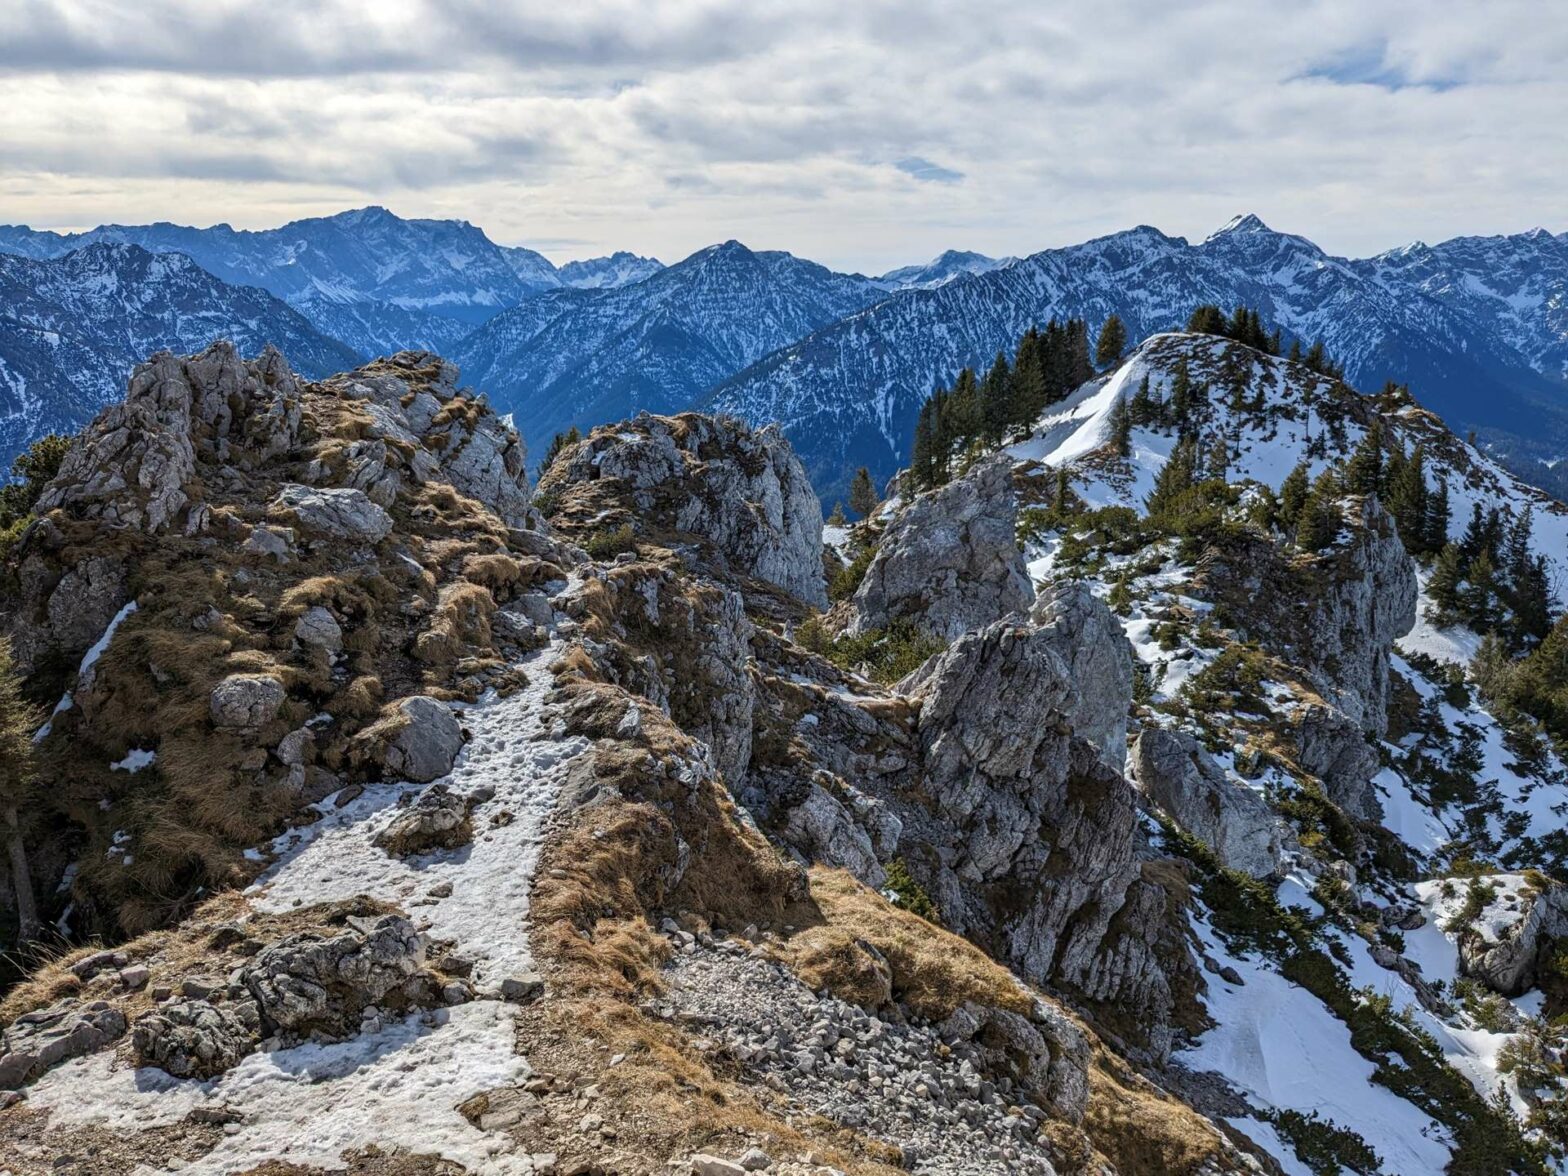 Teufelstättkopf Peak in the Bavarian Alps